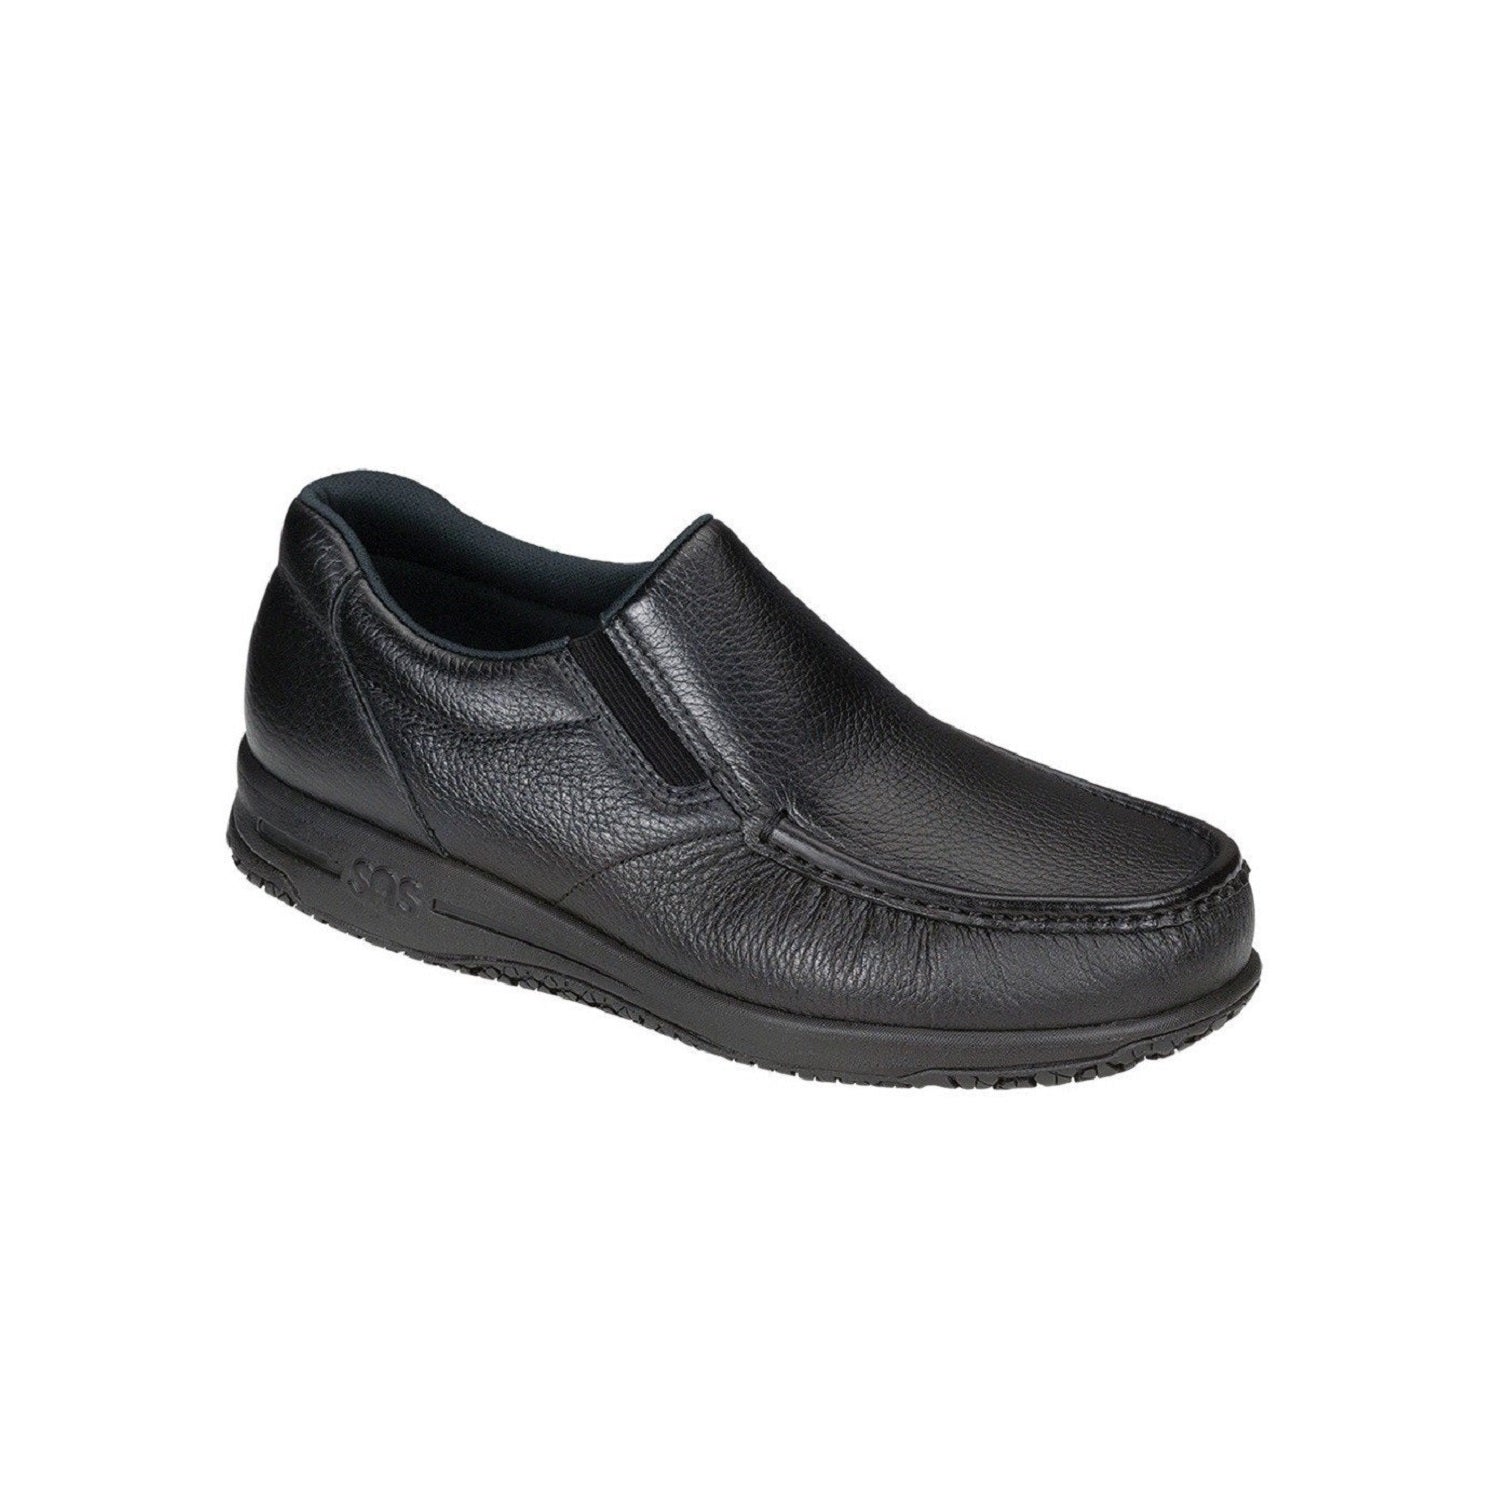 Men's leather slip on slip resistant shoe.